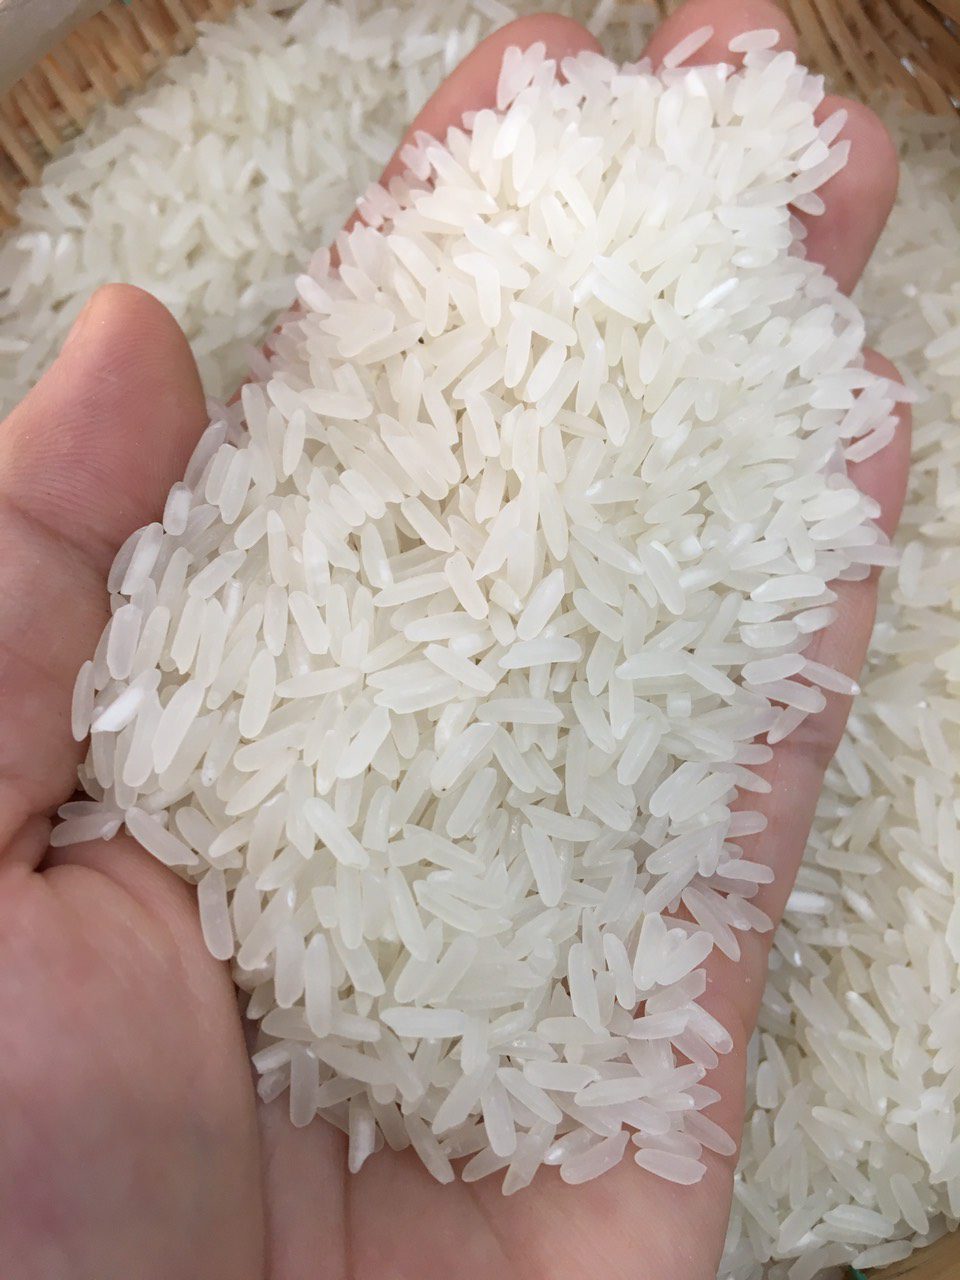 Cơ hội xuất khẩu gạo sang thị trường Campuchia NS-G01-28J22